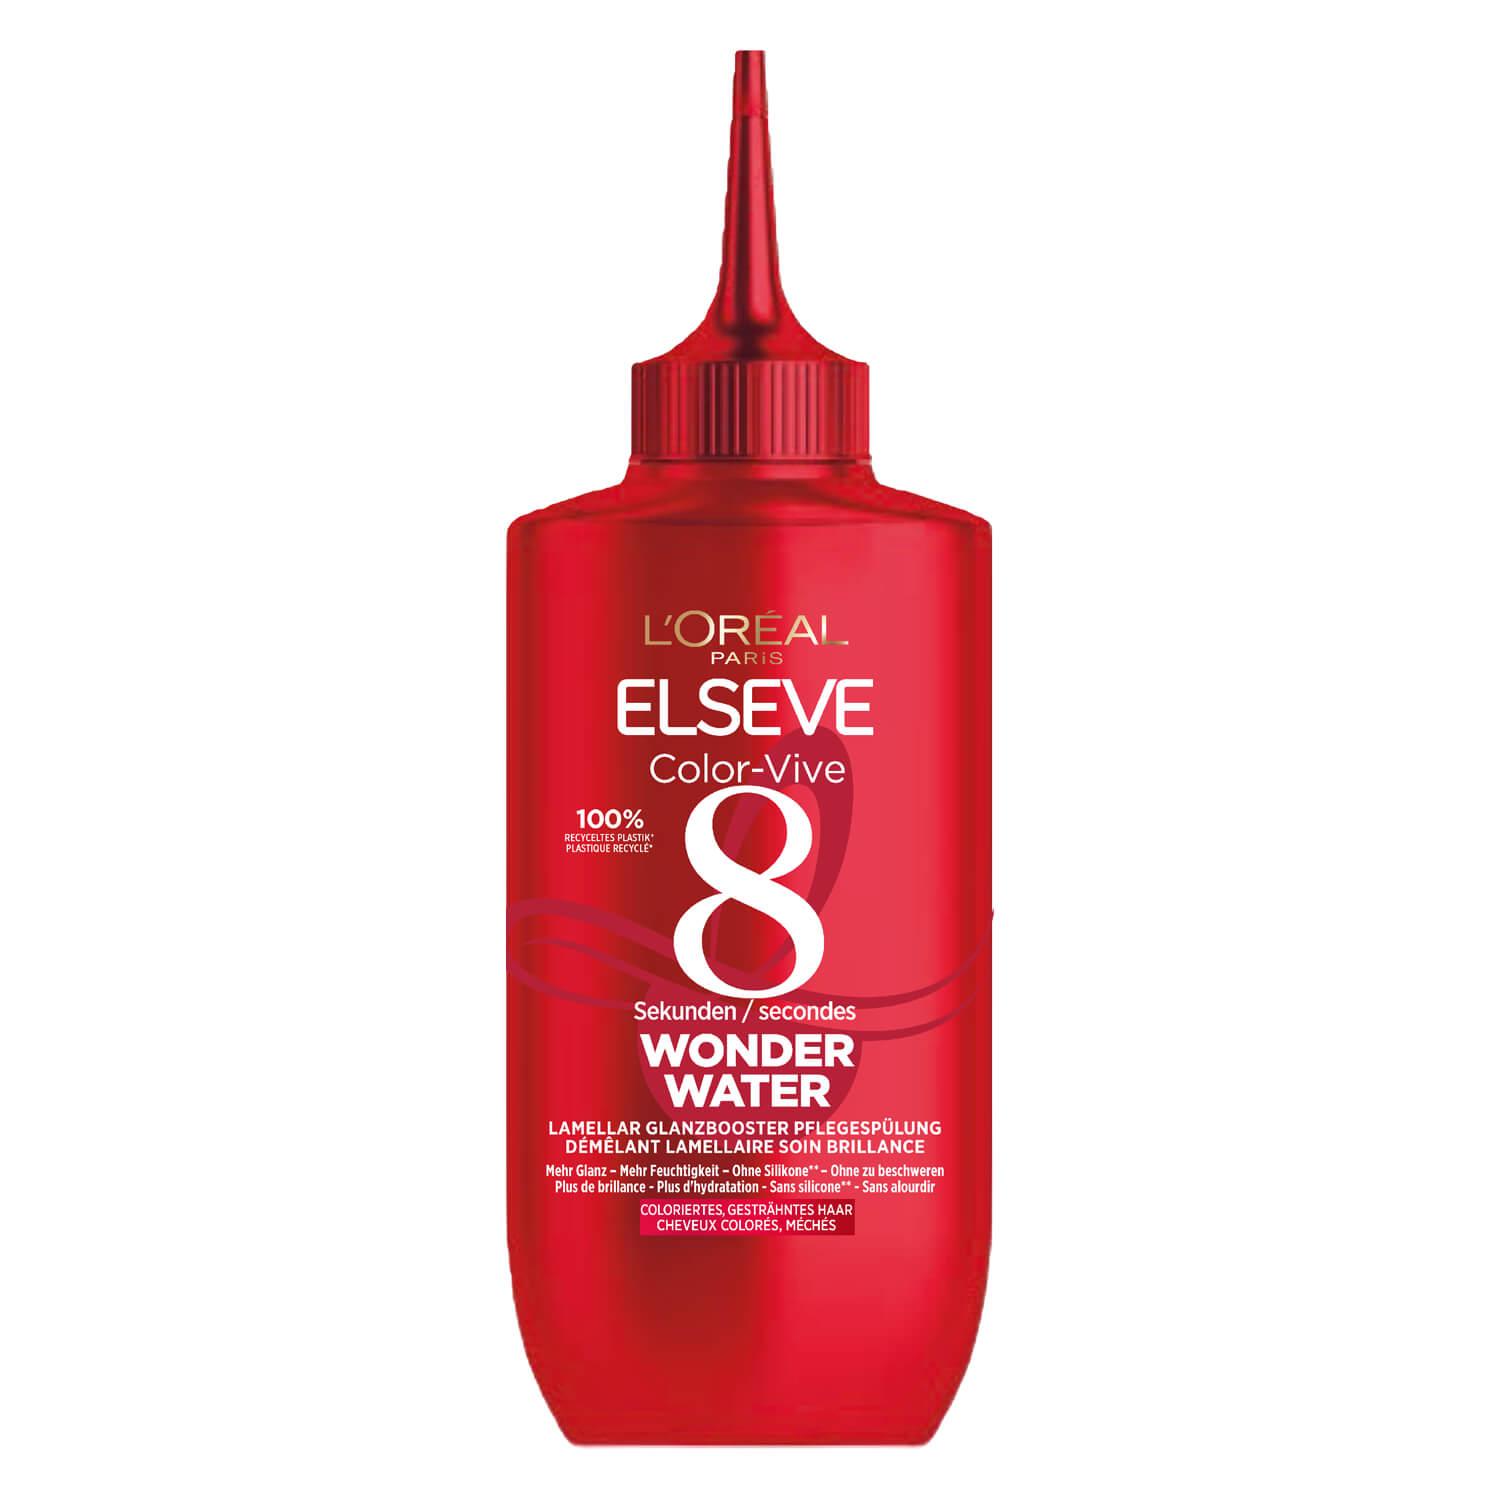 LOréal Elseve Haircare - Color-Vive Wonder Water Démêlant lamellaire soin brillance